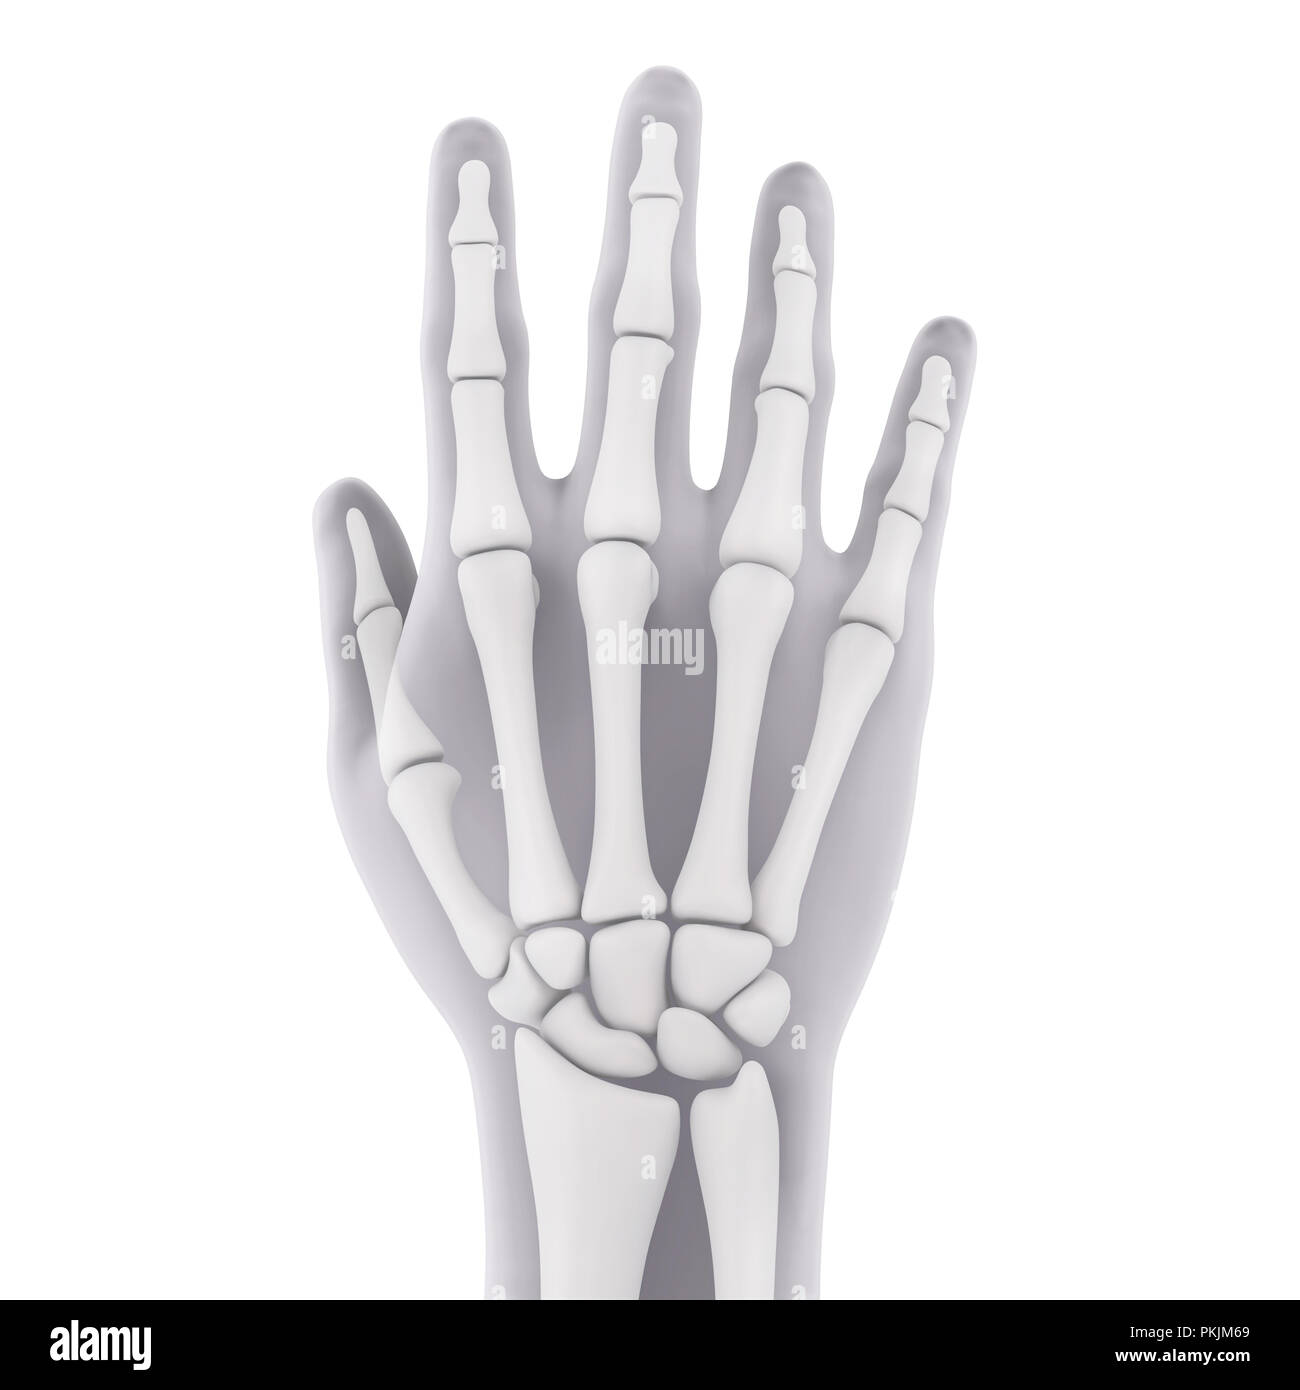 La main de l'illustration anatomique Banque D'Images